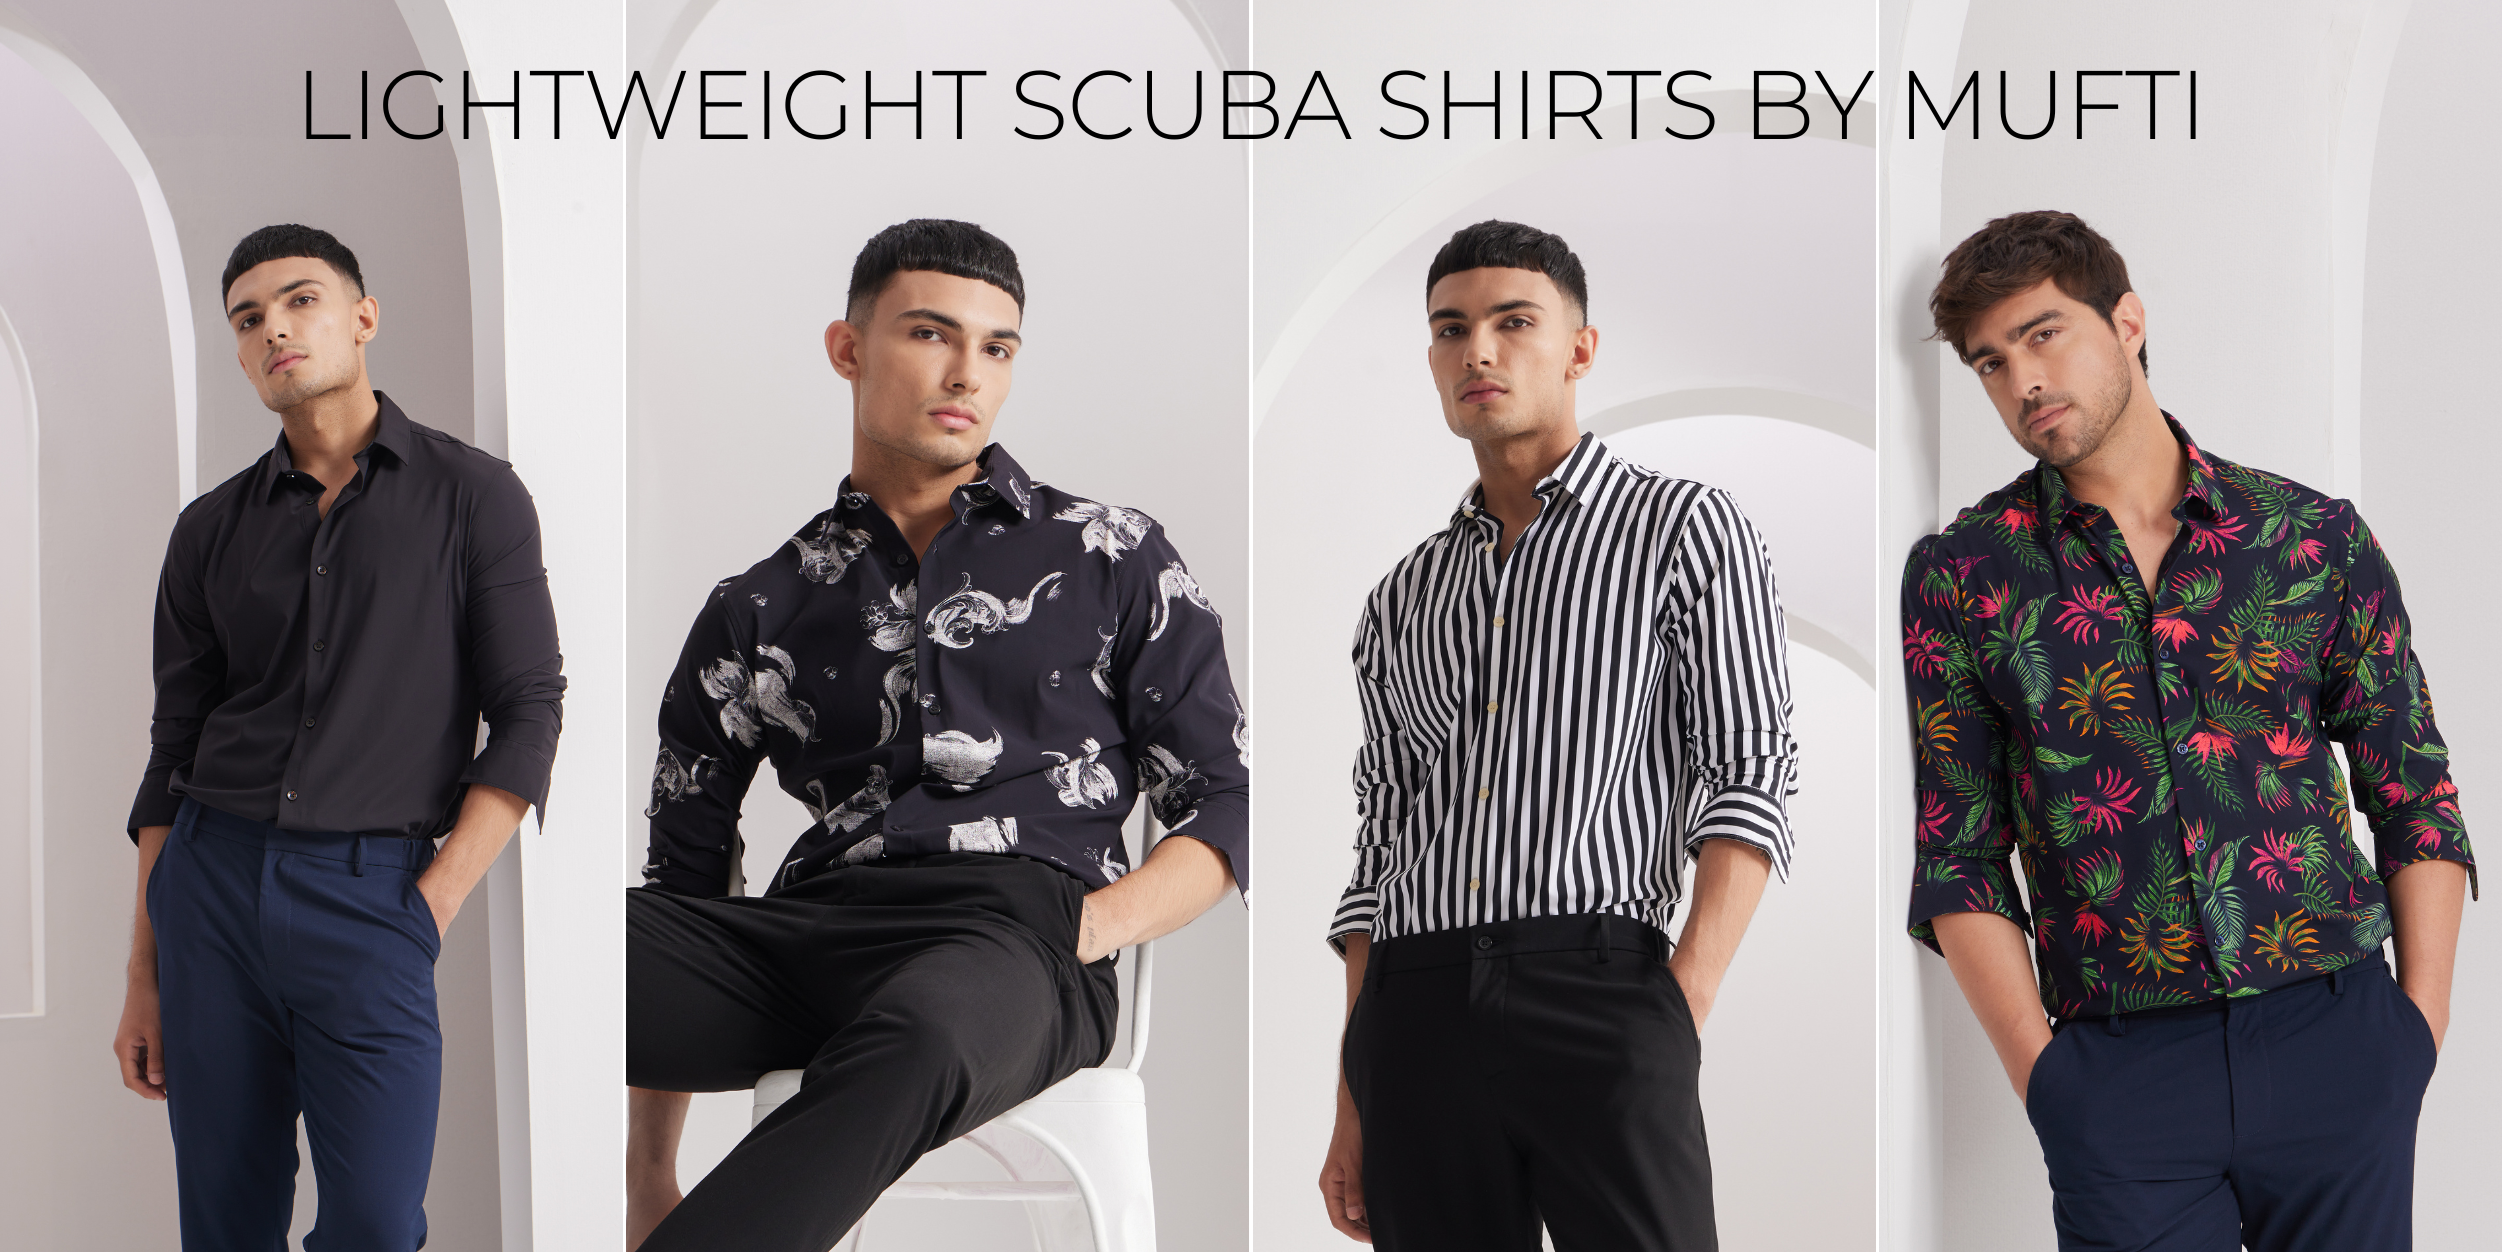 Lightweight Scuba Shirts by Mufti